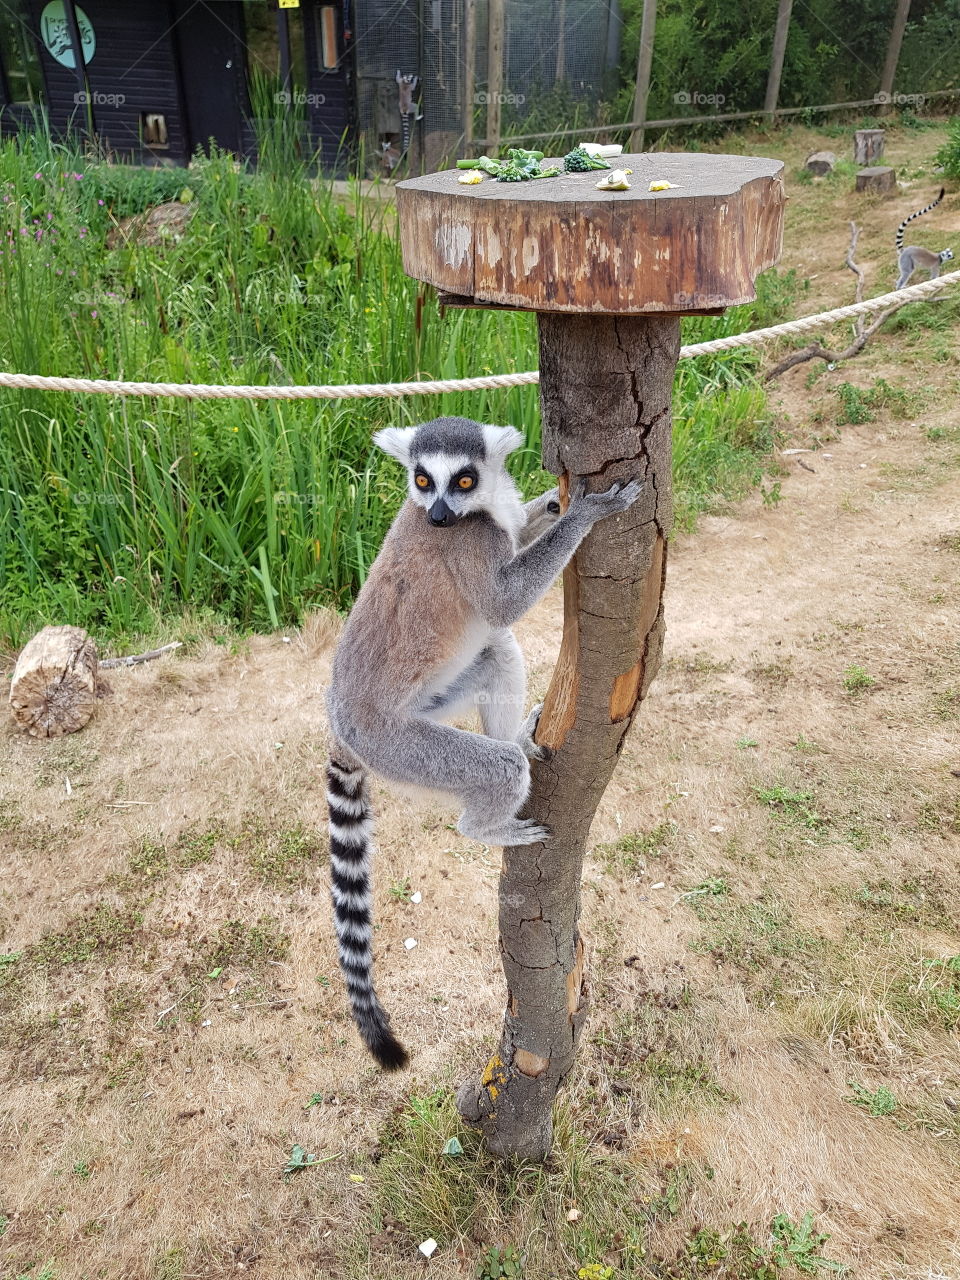 beautiful ring tailed lemur striking a pose.